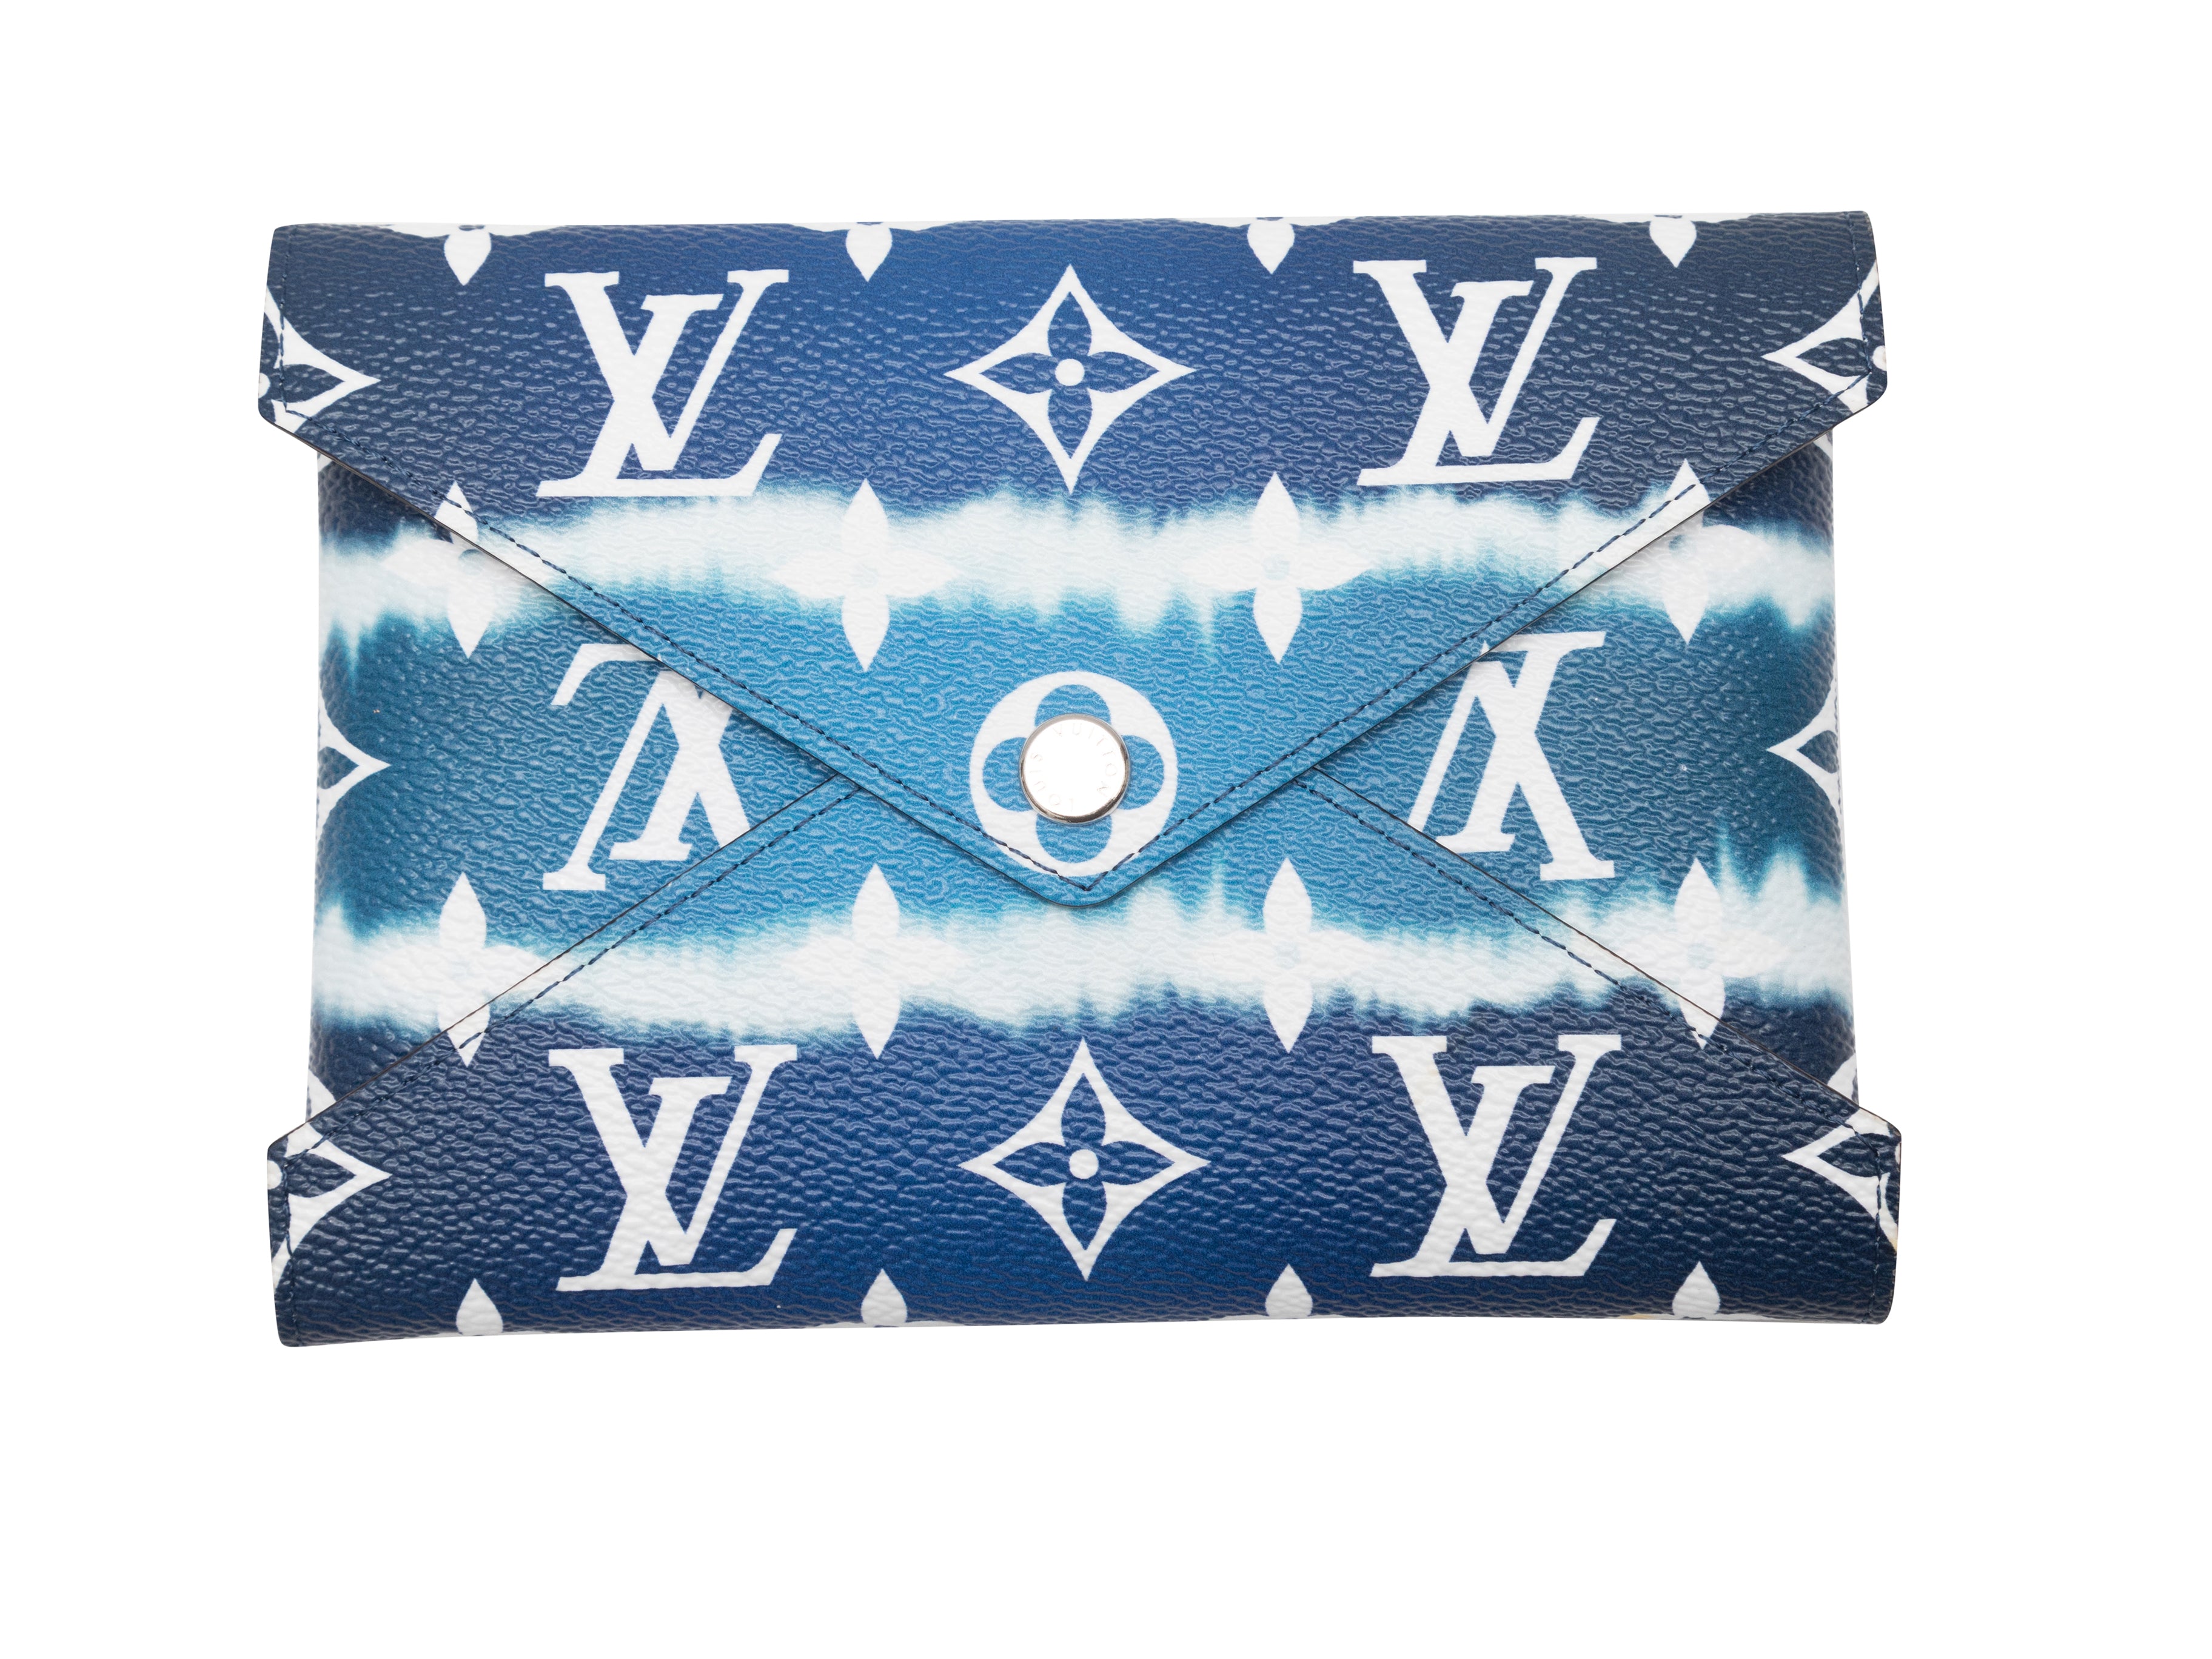 Louis Vuitton KIRIGAMI POCHETTE Medium Monogram Added Strap